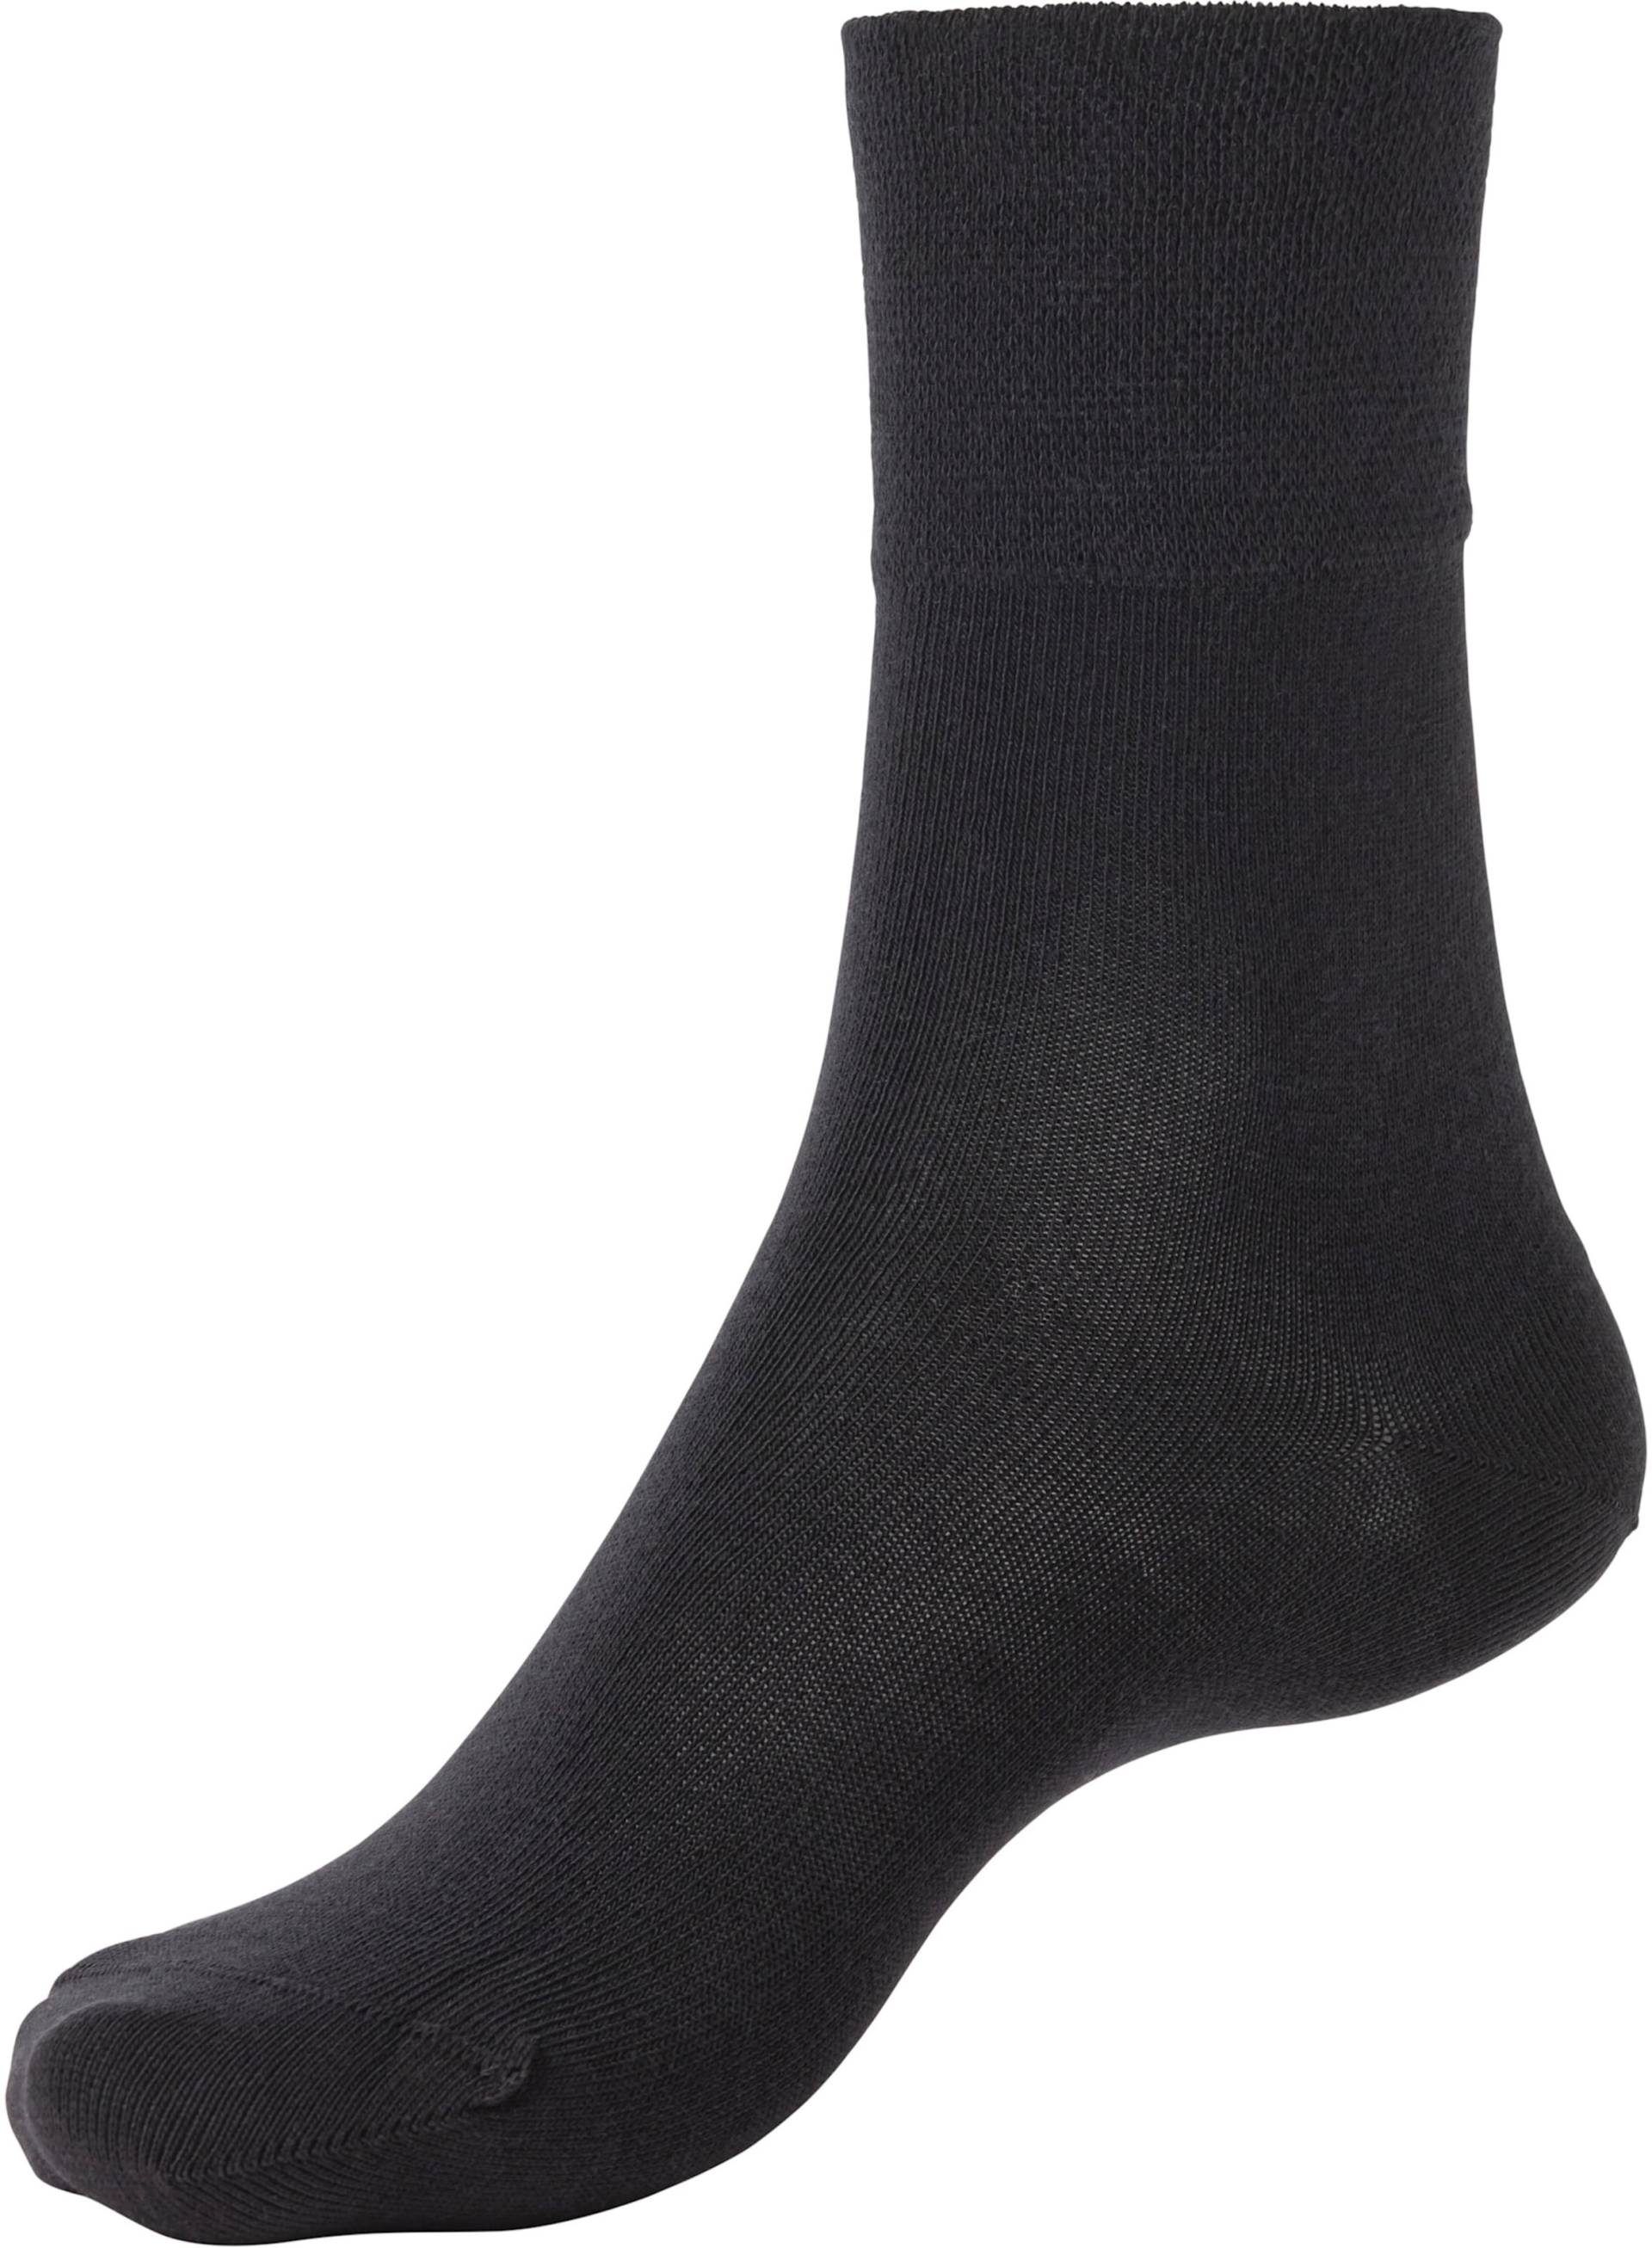 Socken in 3x schwarz von H.I.S